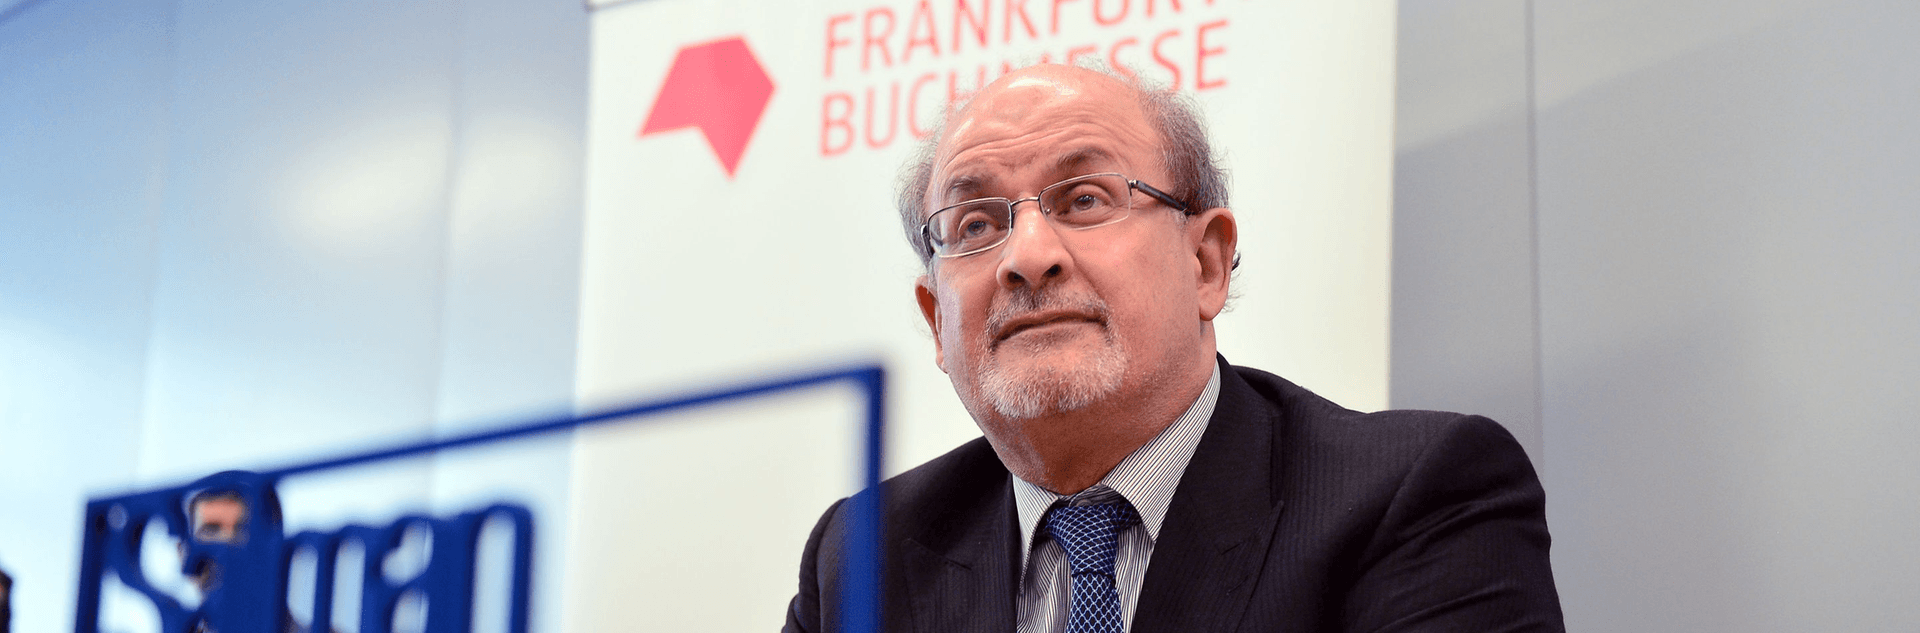 Salman Rushdie: Exlusivinterview mit dem Friedenspreisträger